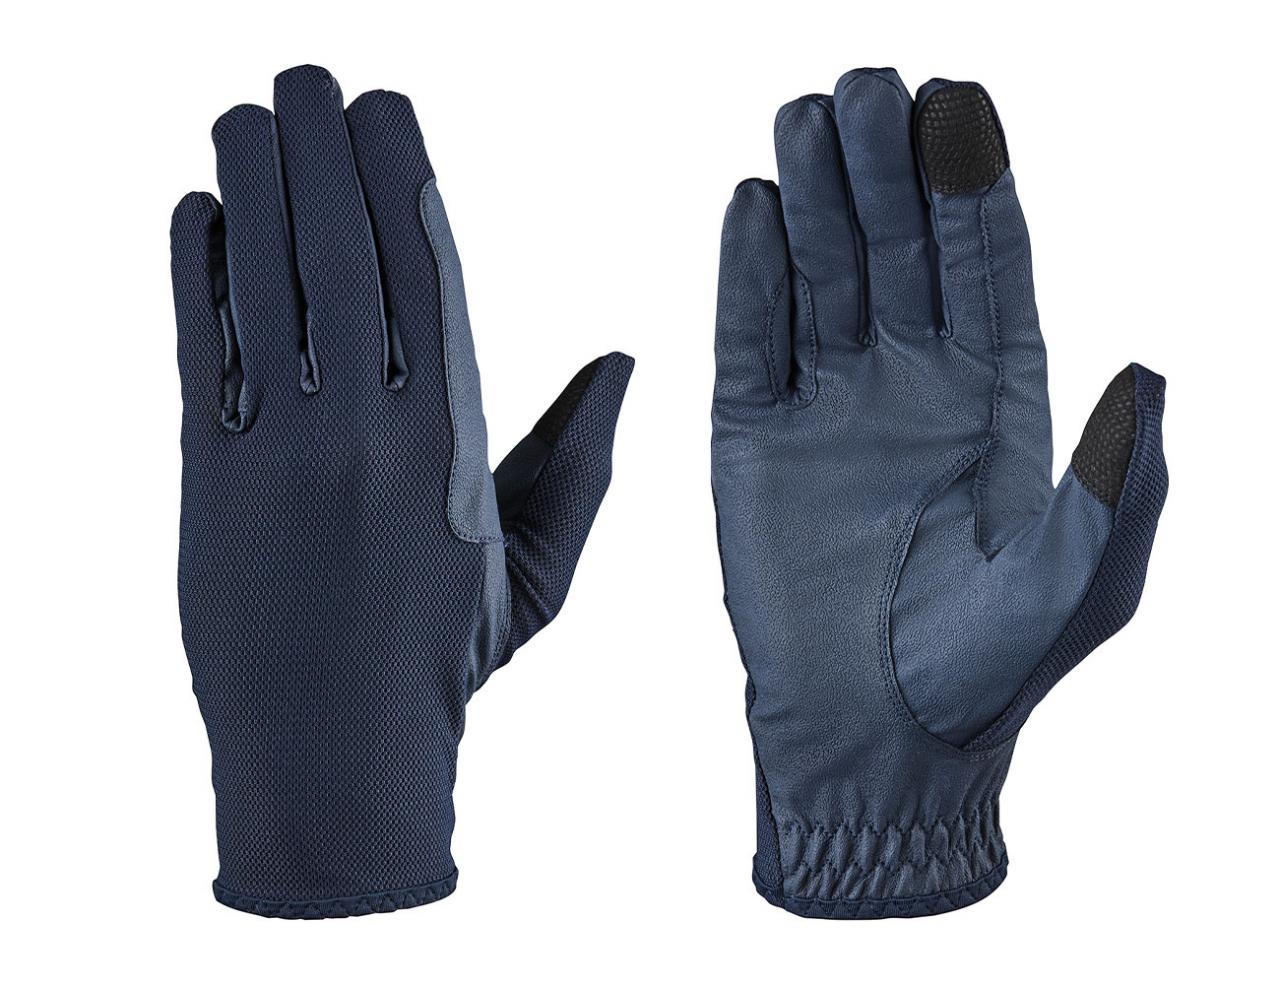 Dublin cool mesh gloves